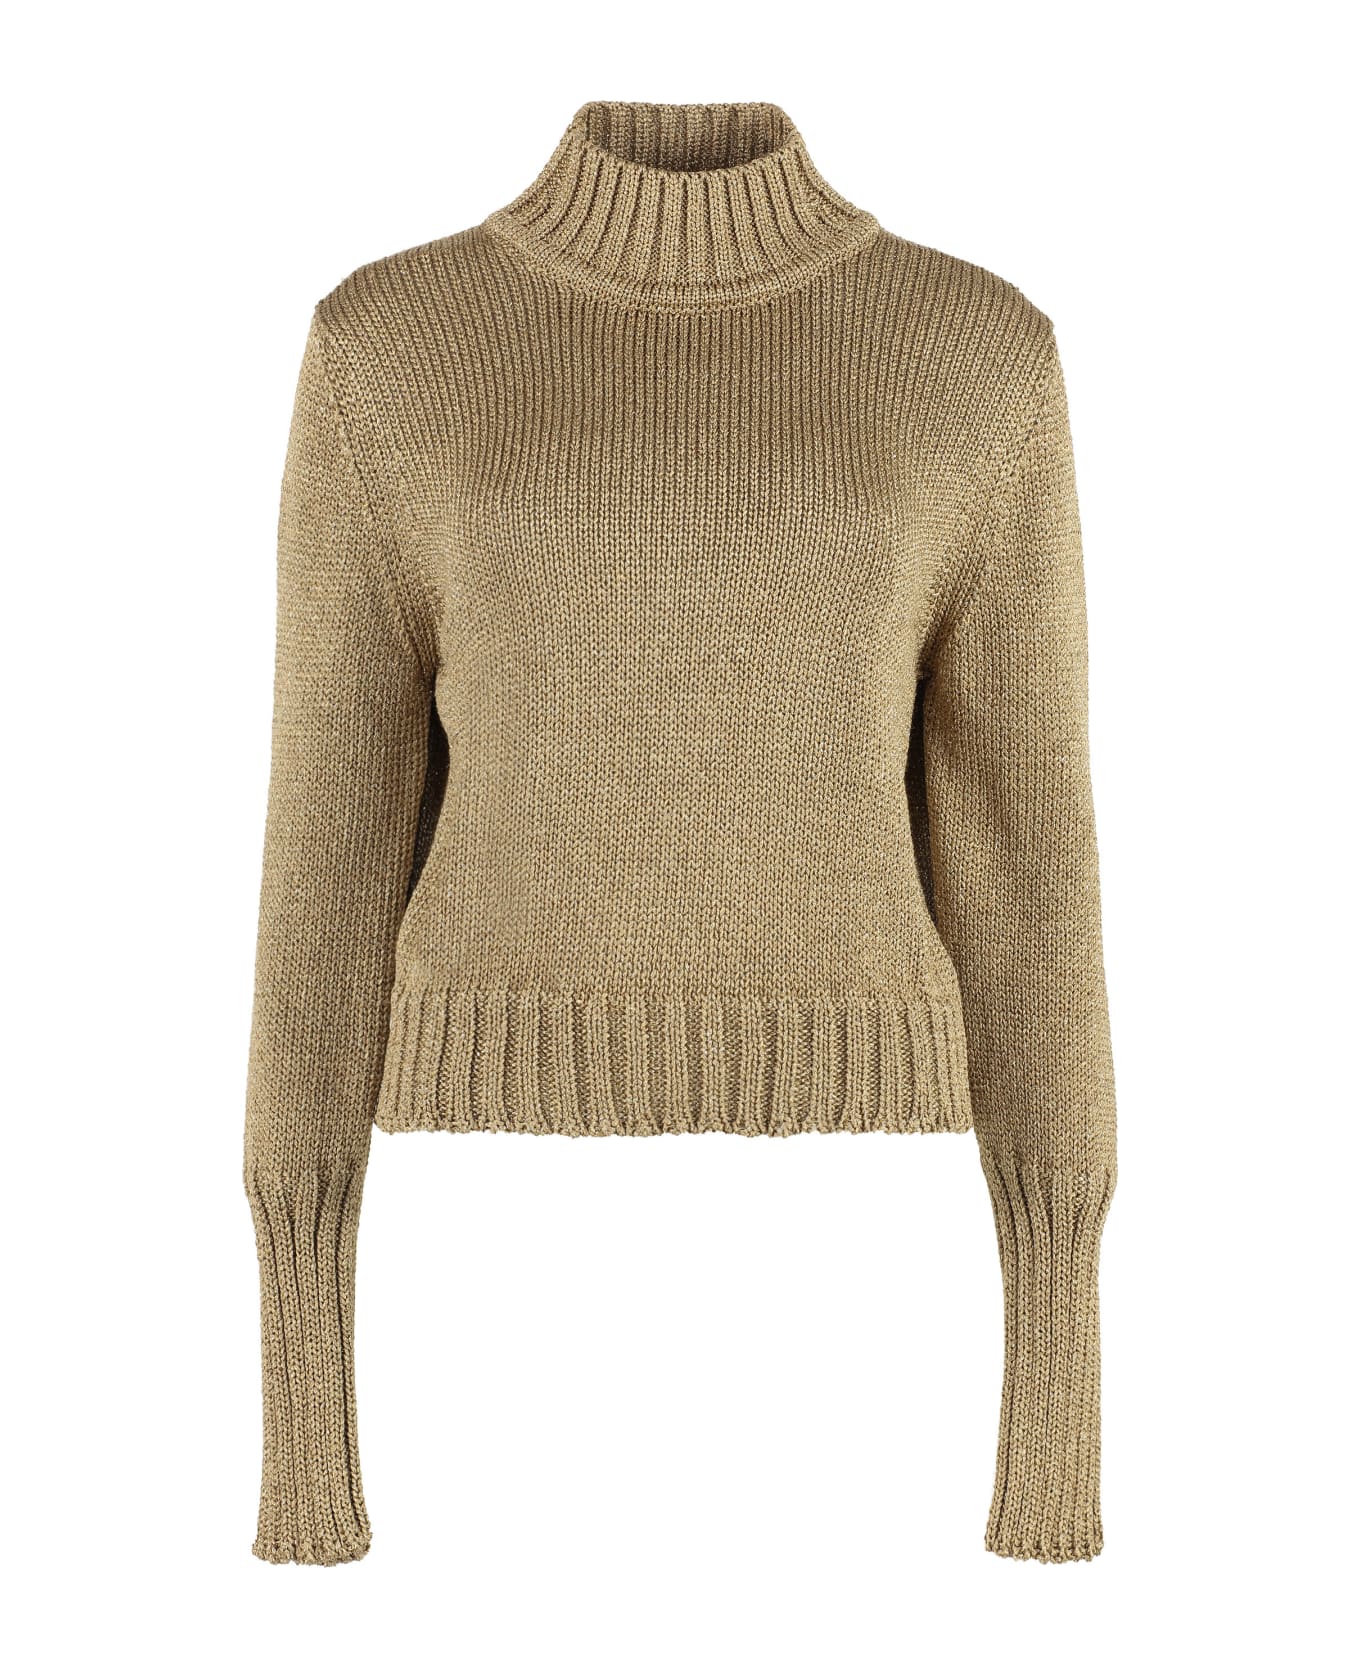 Hugo Boss Lurex Knit Sweater - Gold